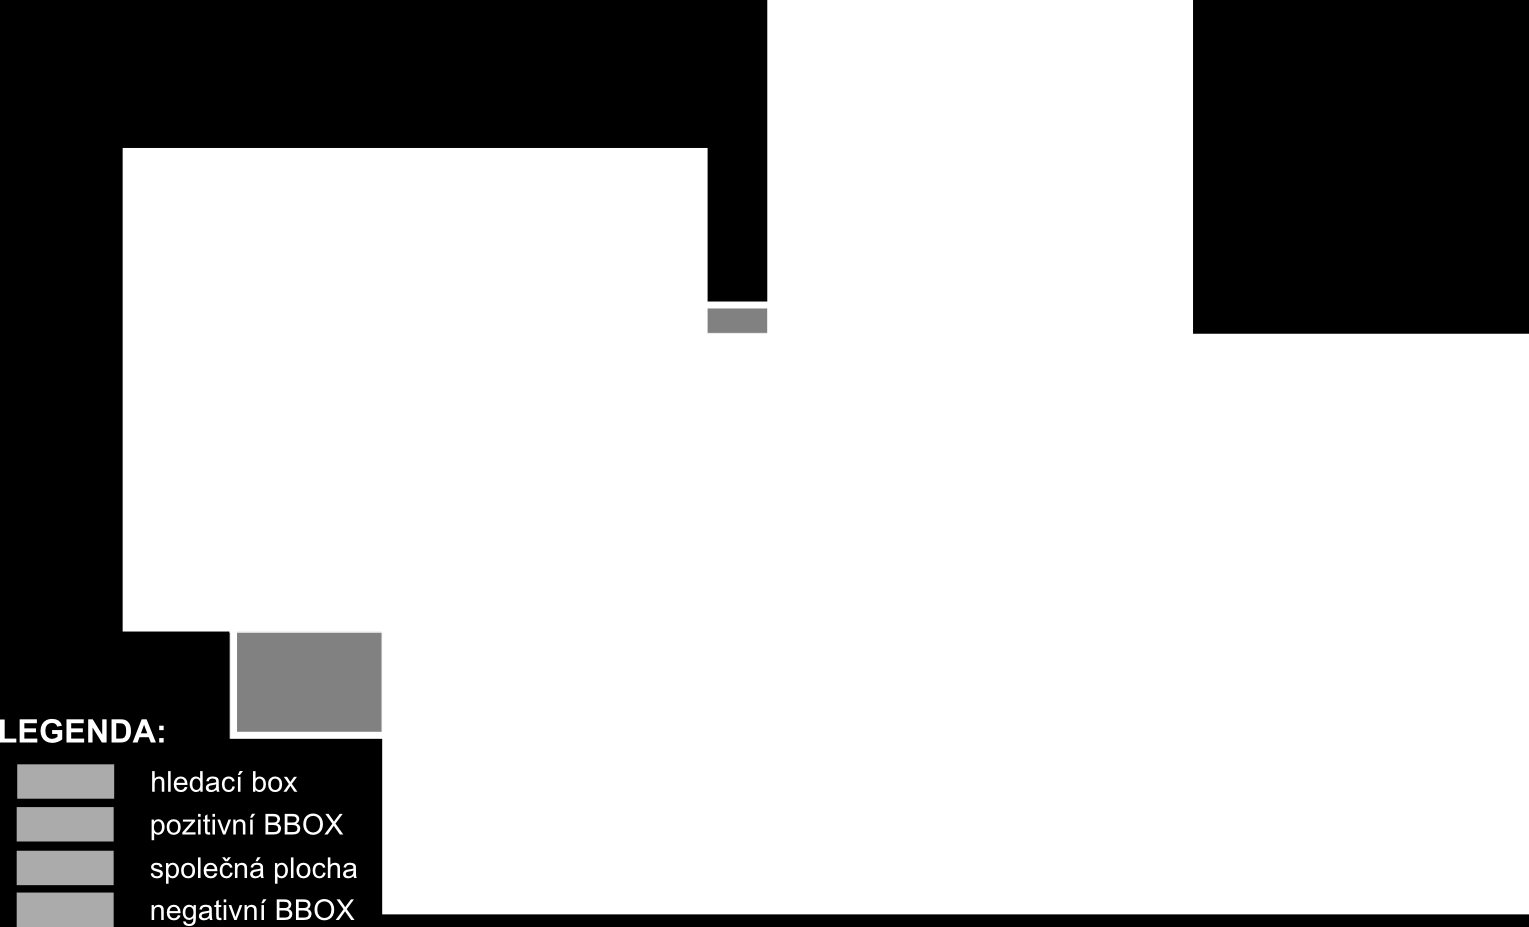 5.1 Popis služby OWSLIST Obrázek 5.2: Ukázka principu hodnocení boxu (BBOX) dle polohy boxu vyhledávání, s nímž je v relaci (zdroj: vlastní zpracování).